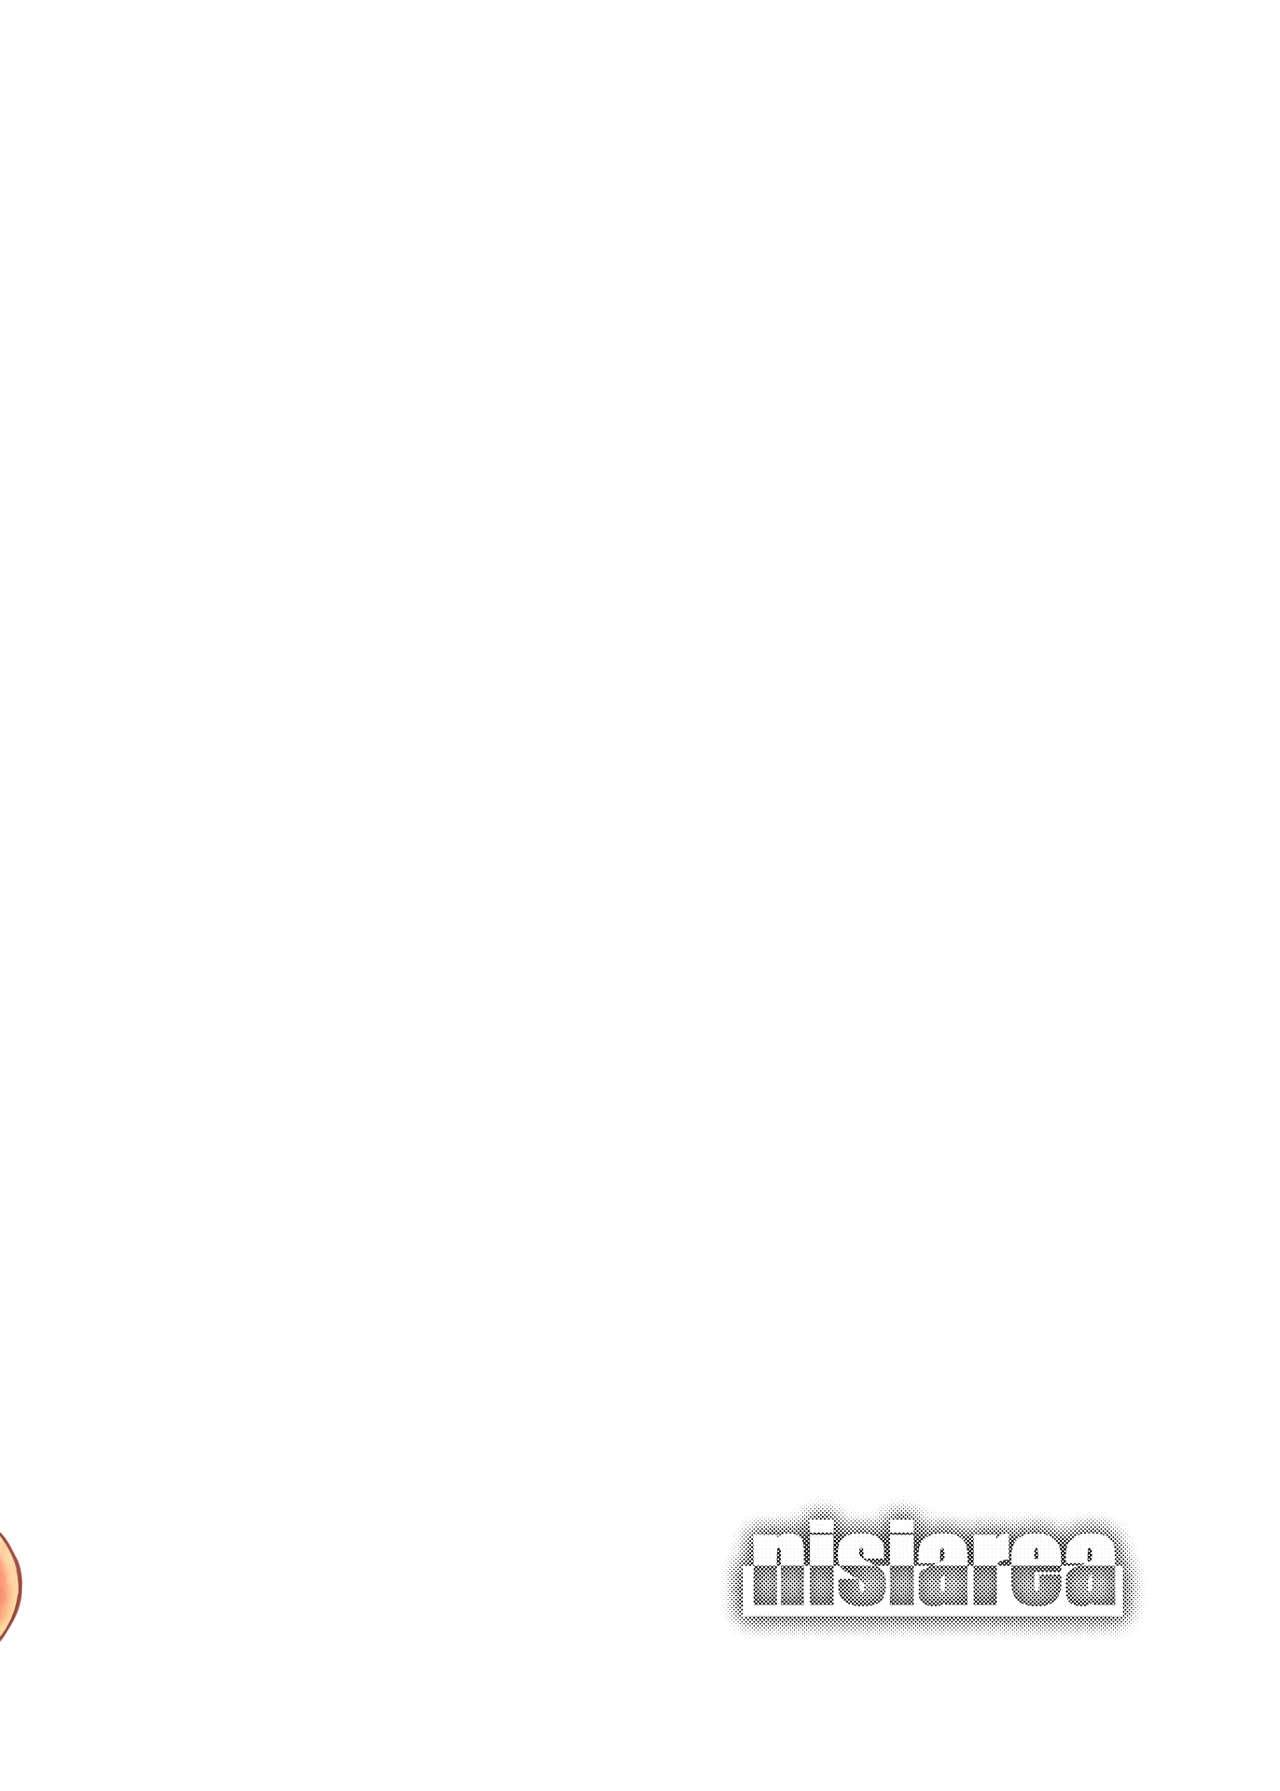 [にしえりあ (性悪)] ももか汁ありす汁 桃華&ありす総集編I (アイドルマスター シンデレラガールズ) [DL版]